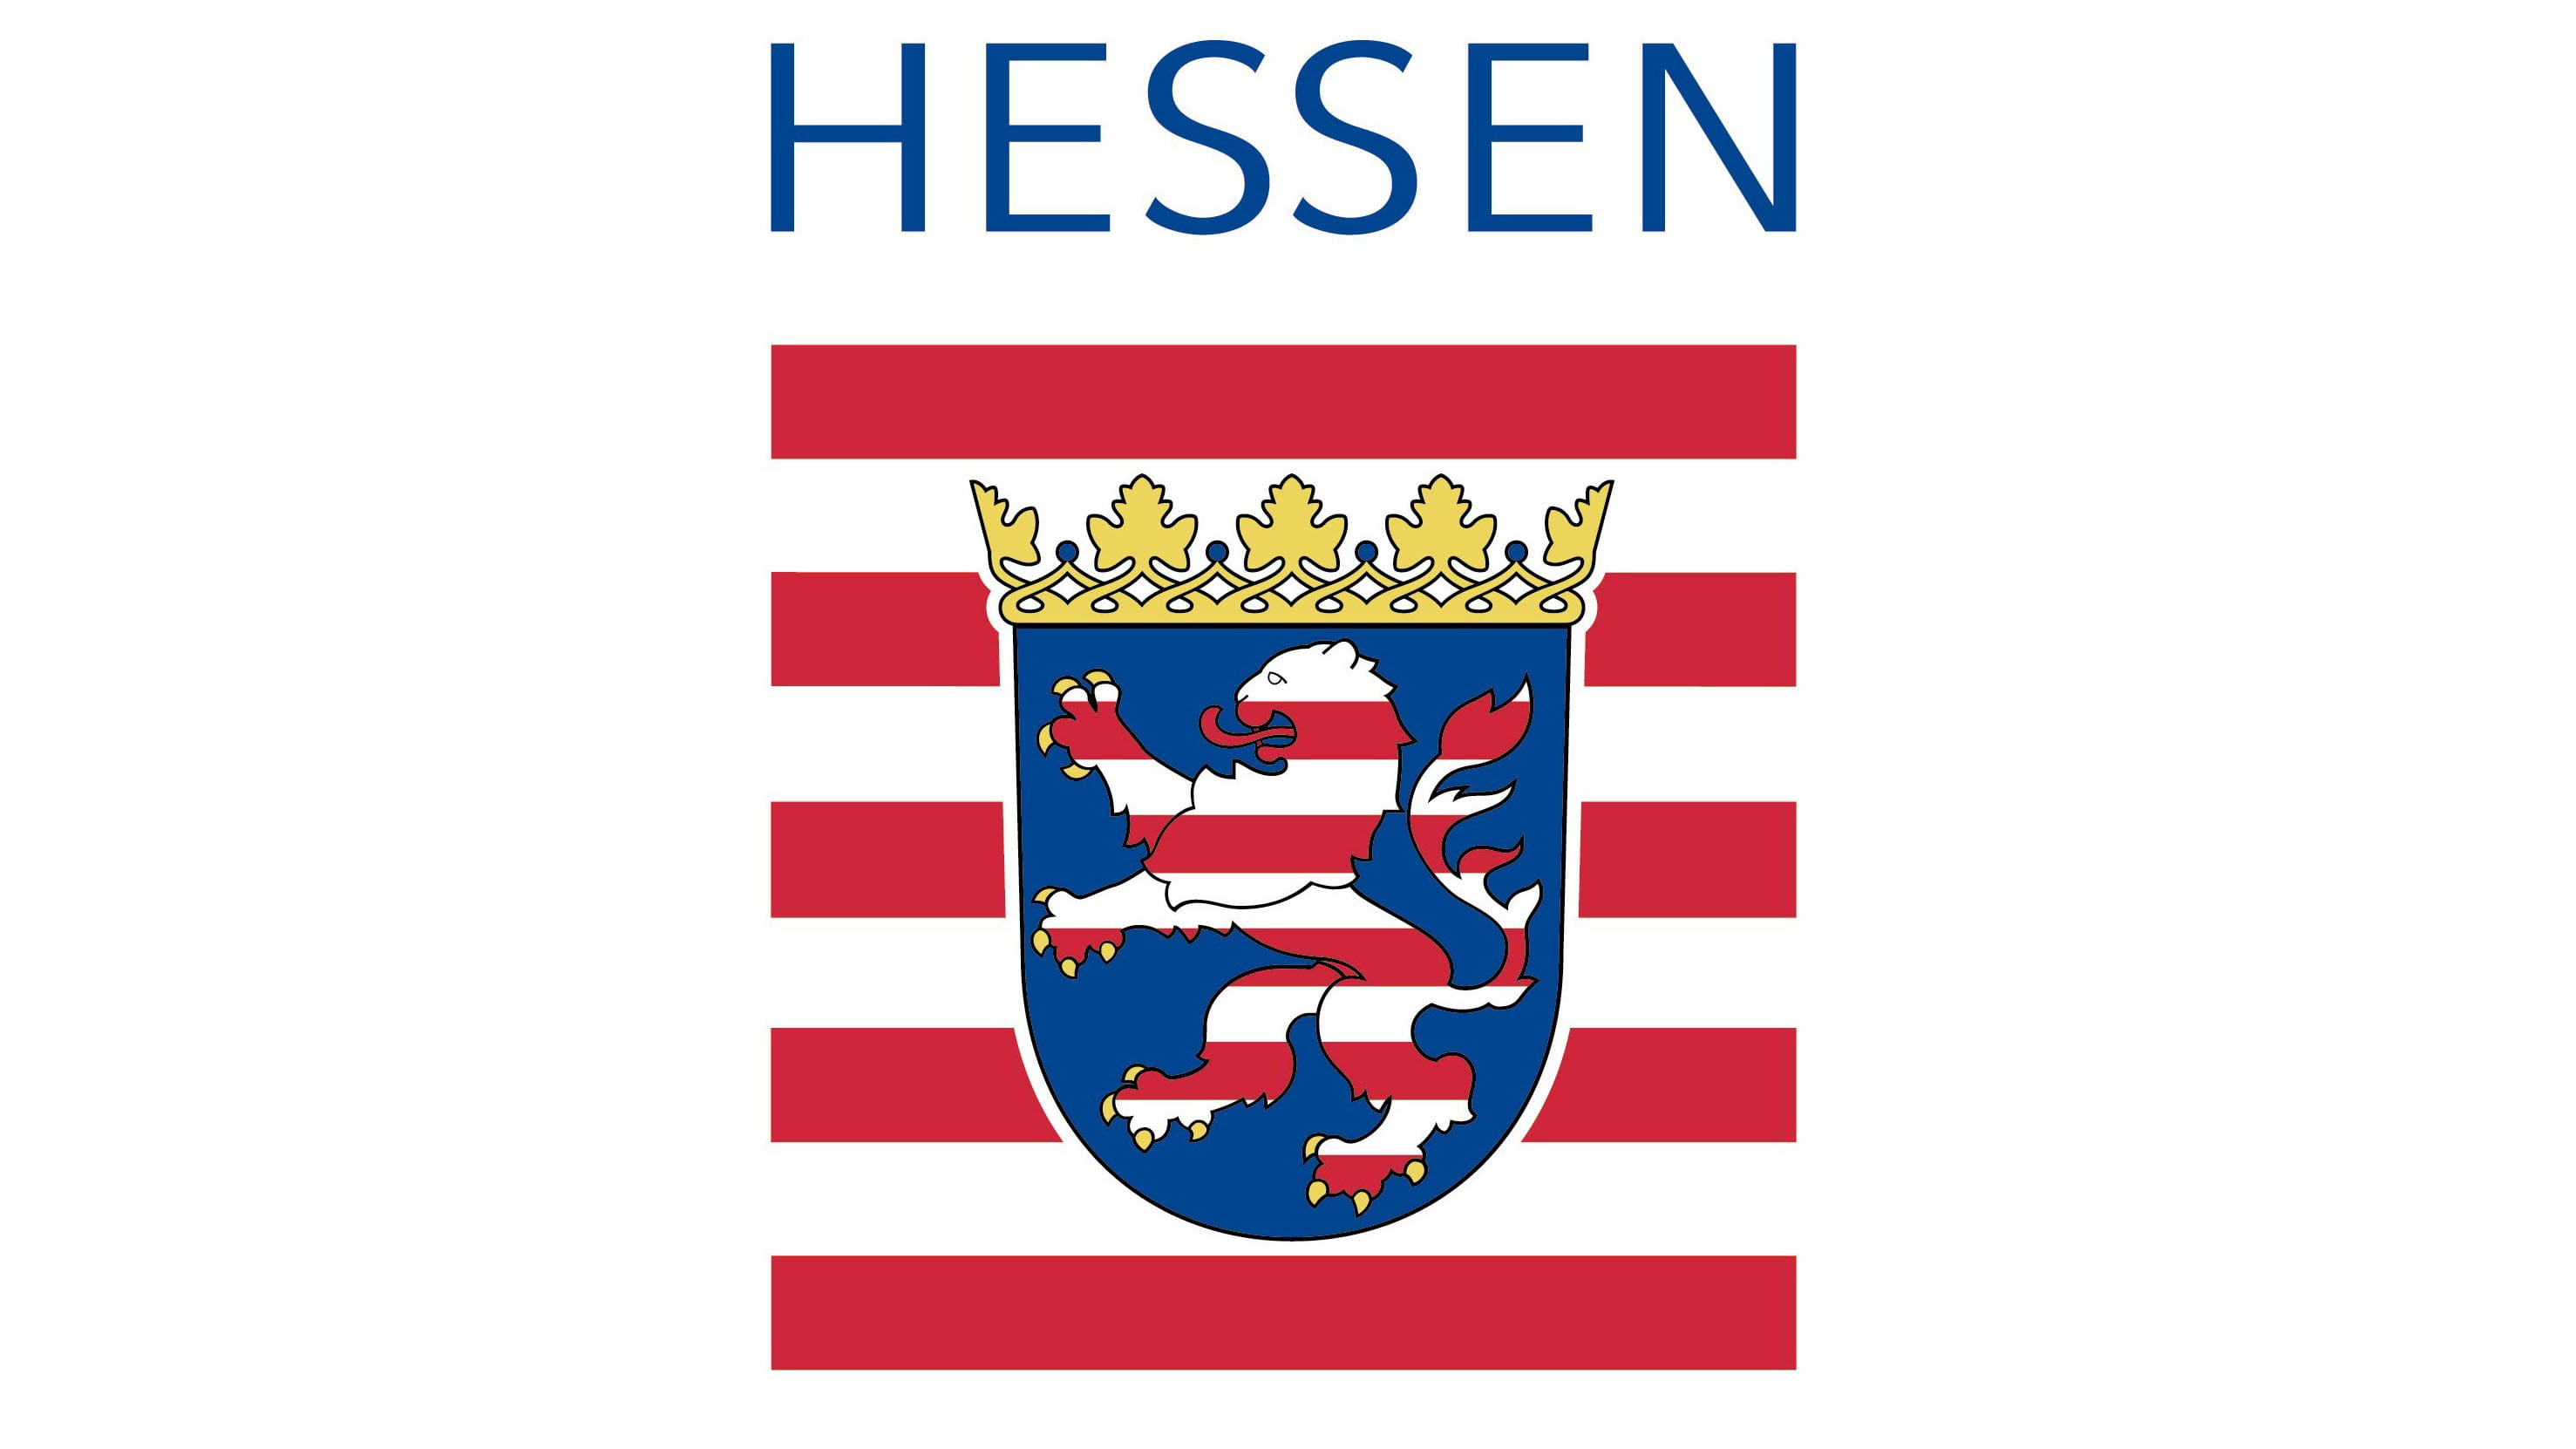 Das Hessische Wappen mit einem rot-weiß gestreiftem Löwen